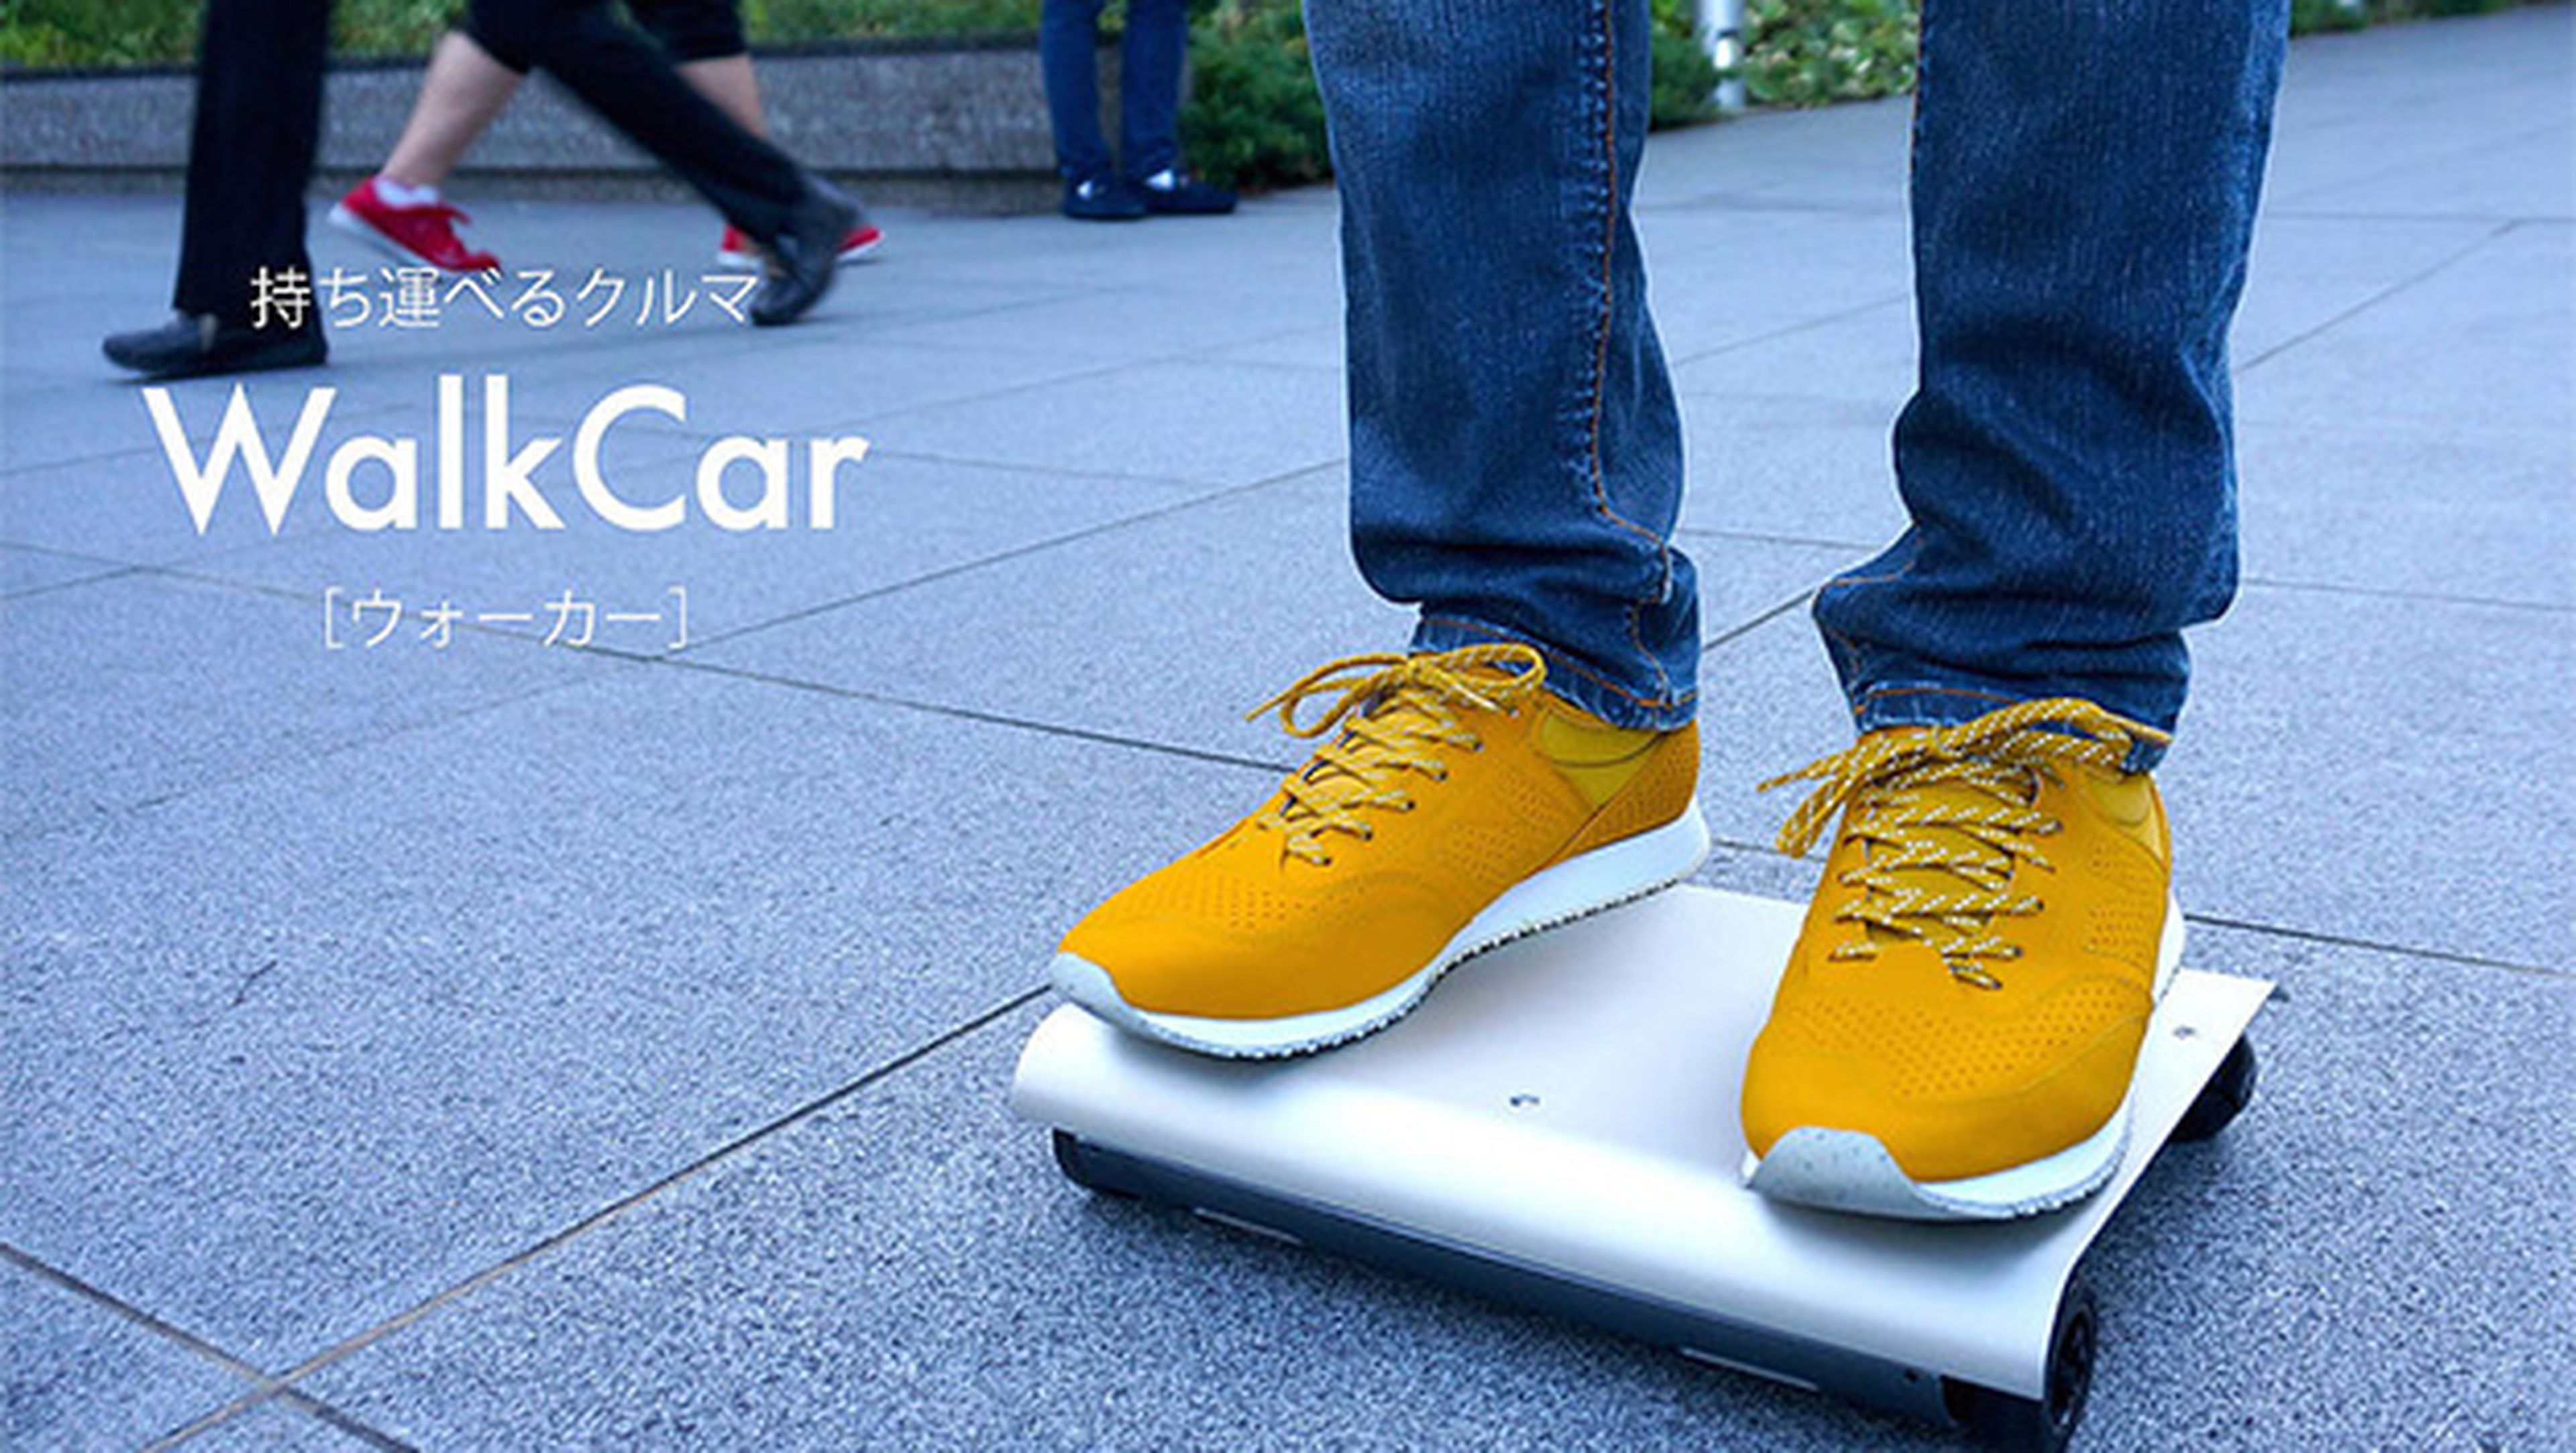 WalkCar, el segway del futuro que cabe en cualquier sitio